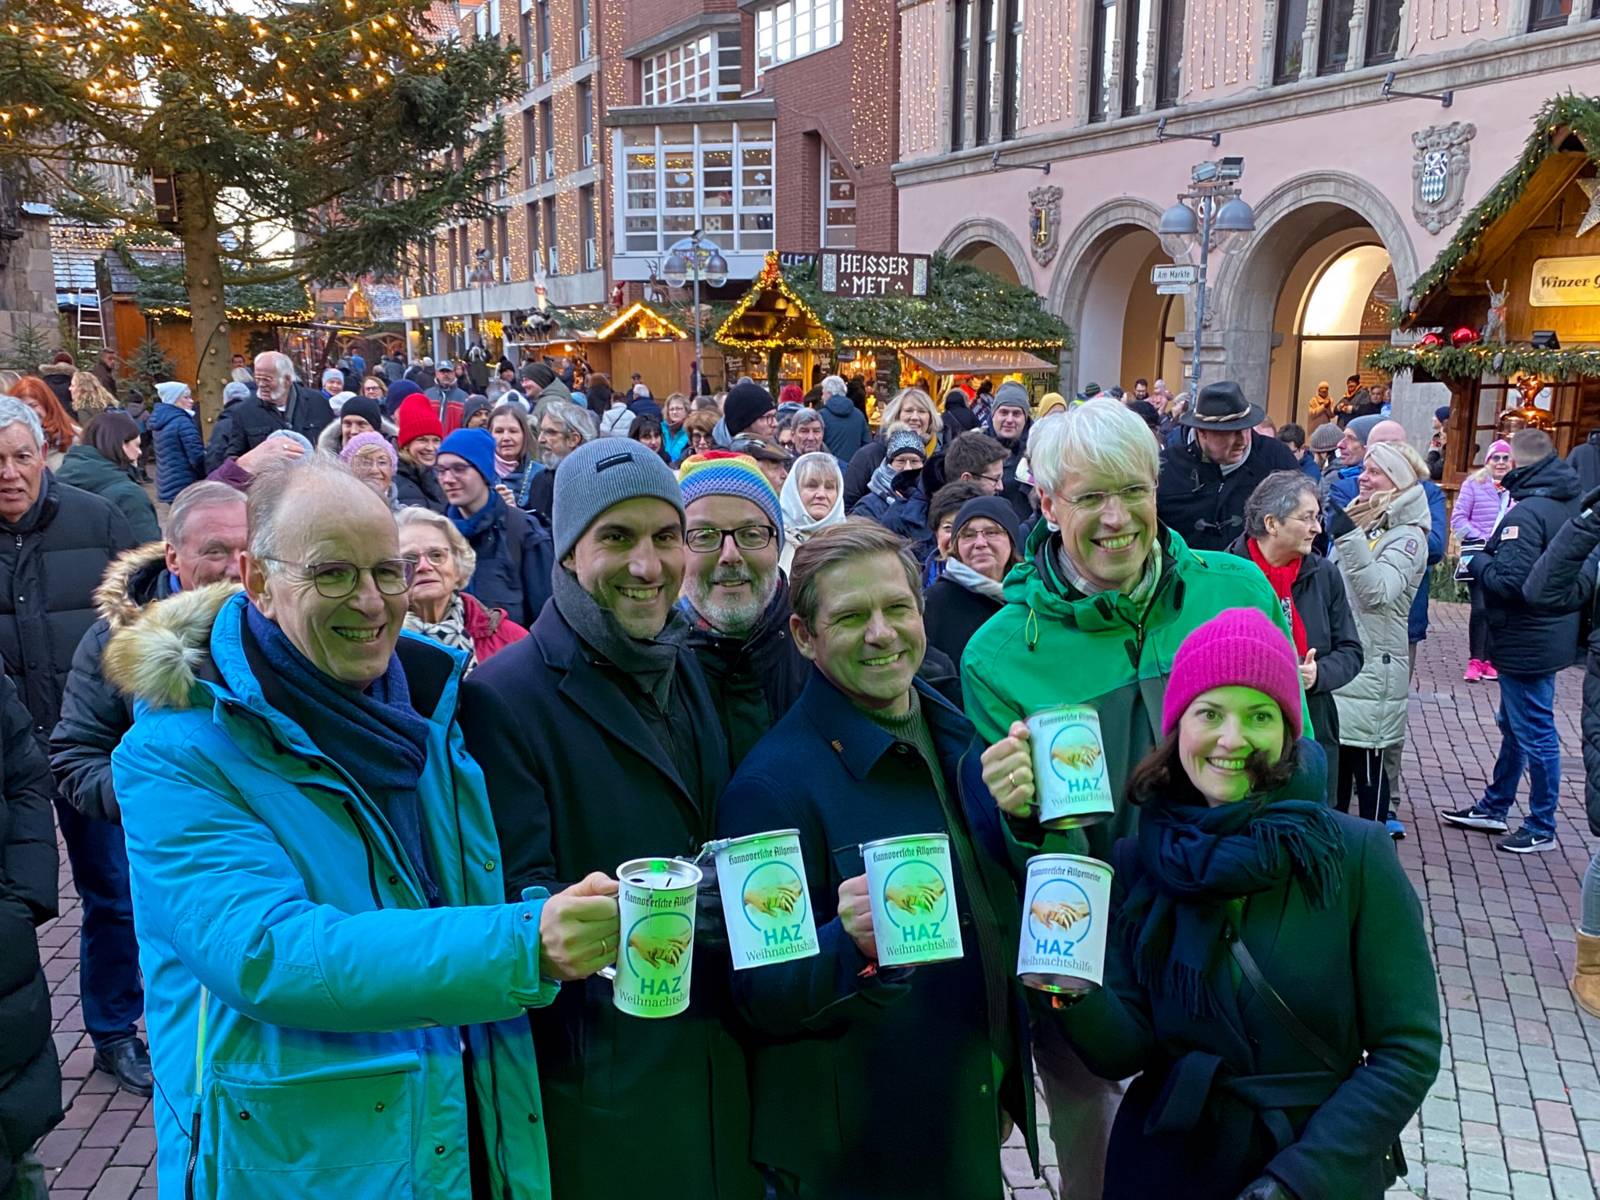 Oberbürgermeister Belit Onayund Stadtsuperintendent Rainer Müller-Brandes mit weiteren Gästen bei der Eröffnung des Weihnachtsmarktes. Sie halten Spendendosen in die Kamera.